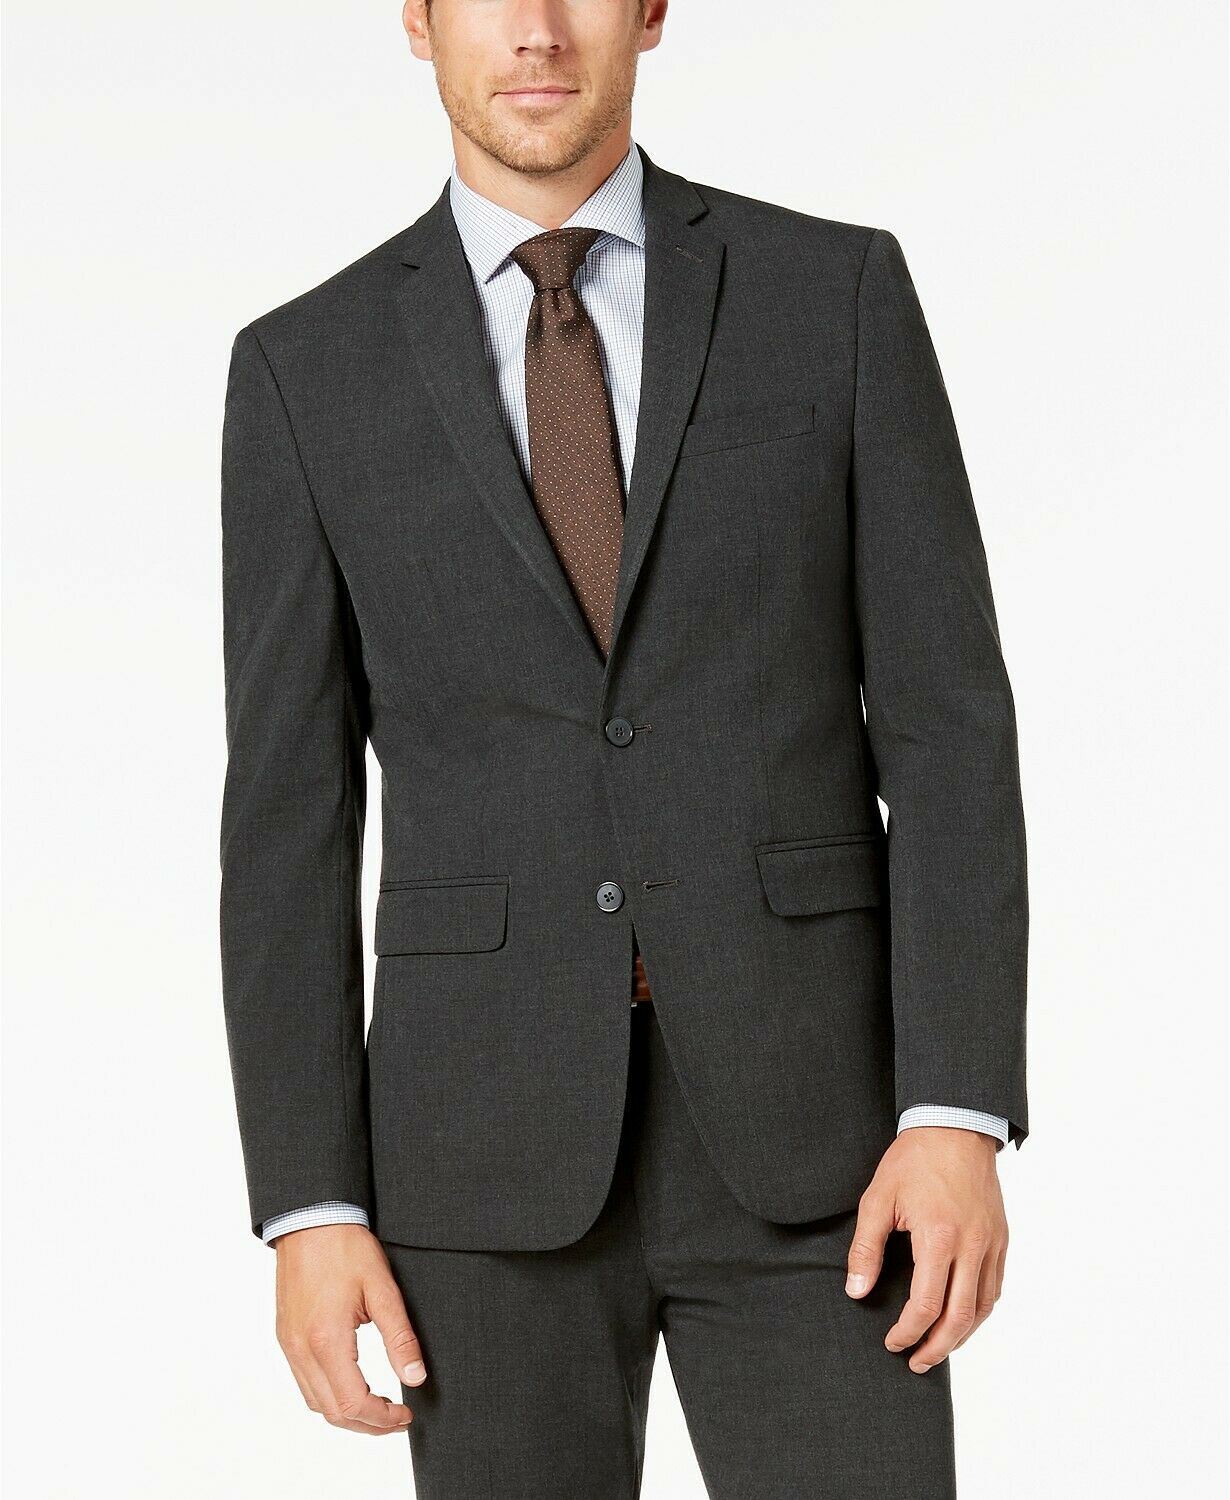 Van Heusen Flex Men's Slim-Fit Suit Jacket 42S Charcoal Grey JACKET ONLY